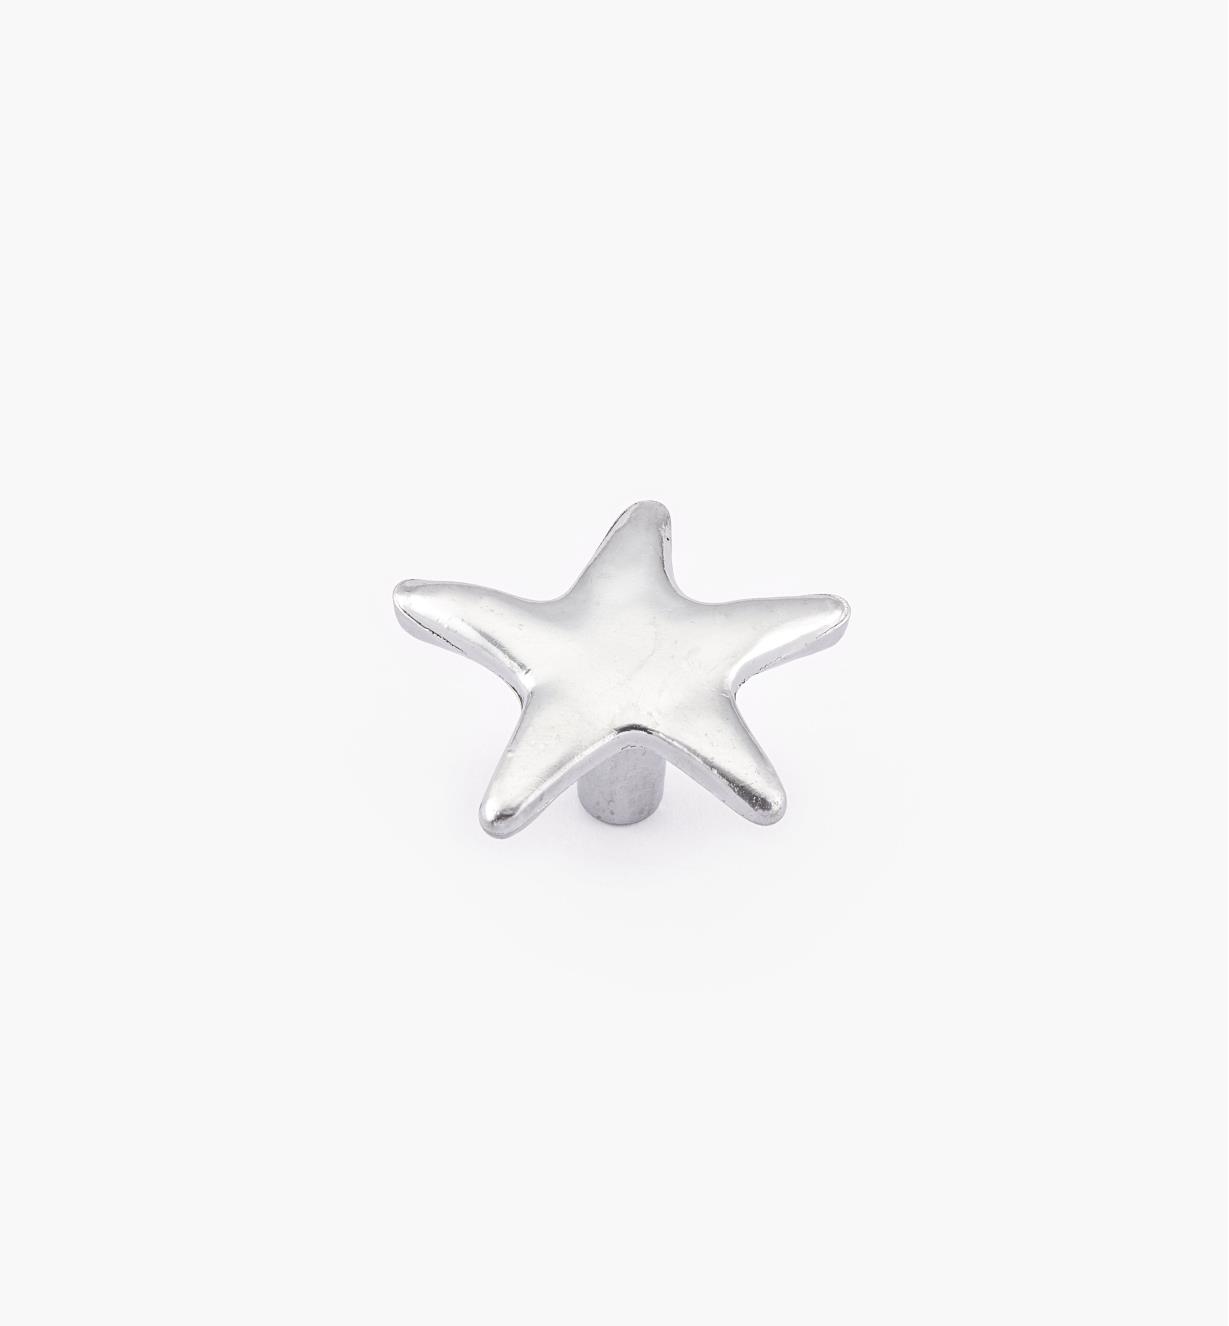 00W5112 - Small Sea Star Ocean-Themed Knob, 21mm x 50mm